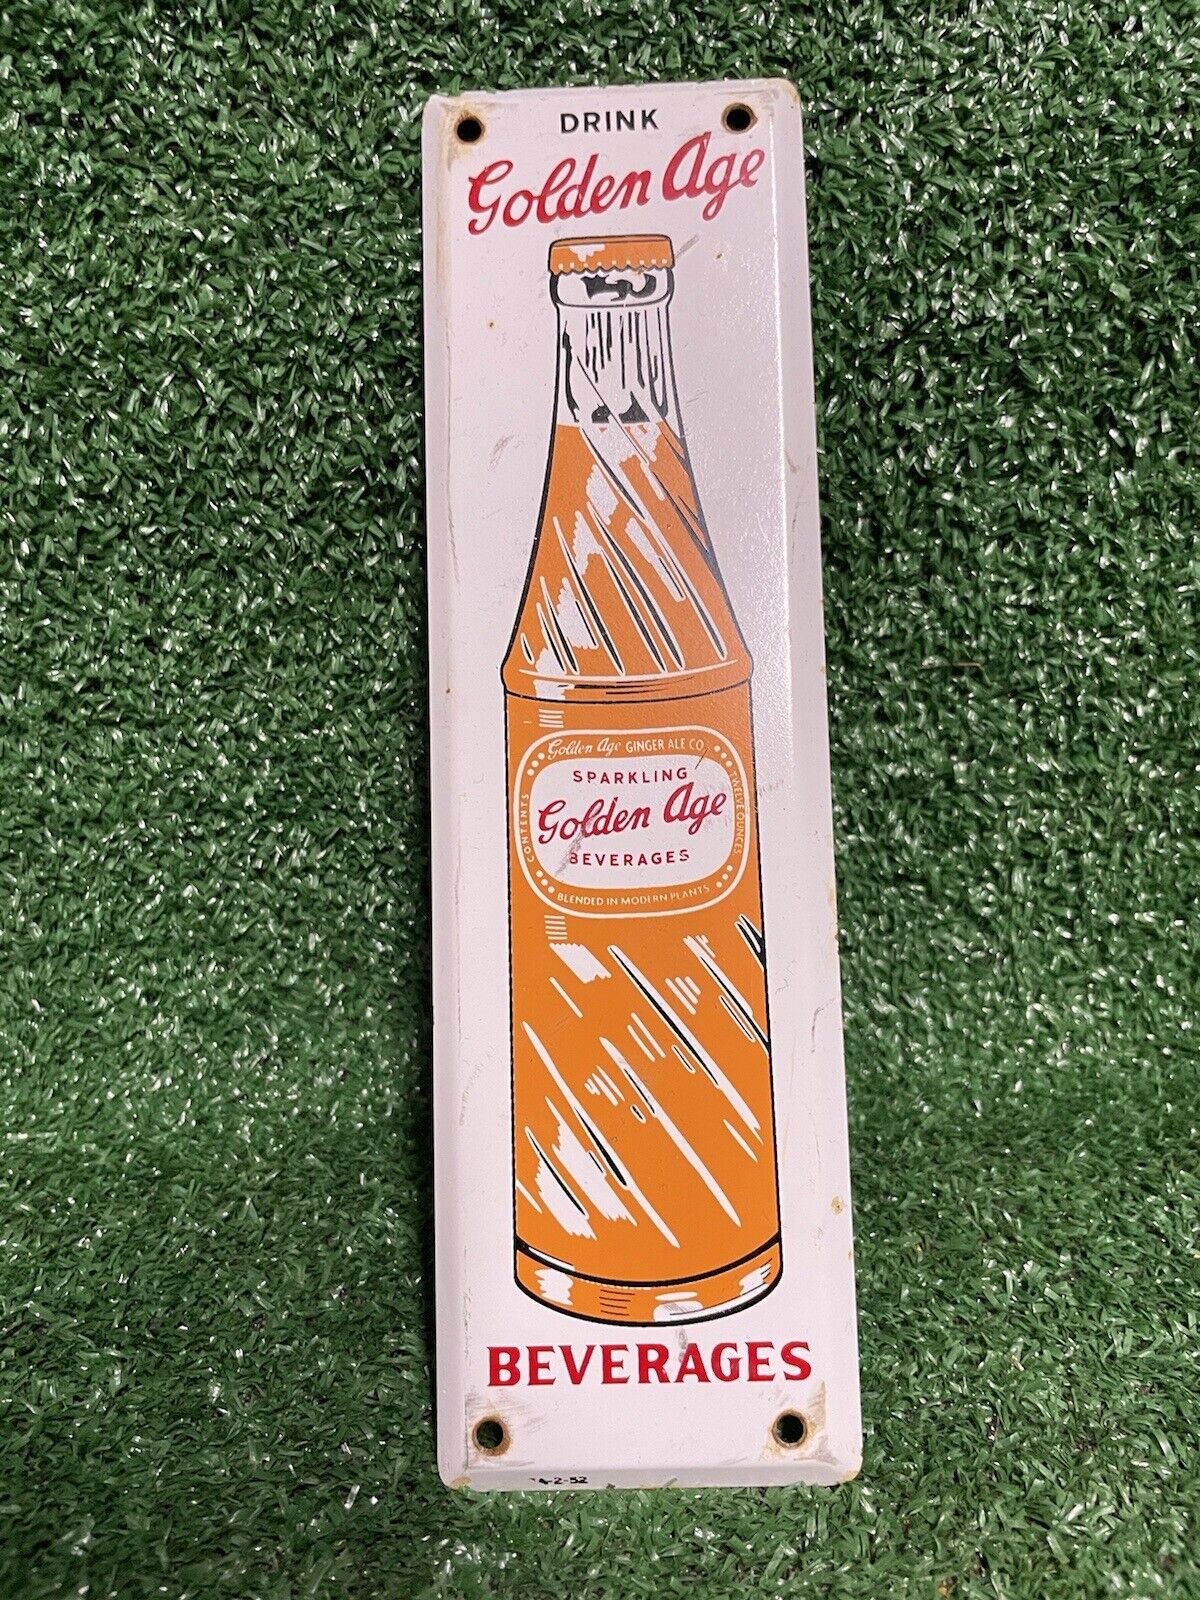 1952 GOLDEN AGE VINTAGE PORCELAIN SIGN CARBONATED SODA DRINK BEVERAGE GINGER ALE